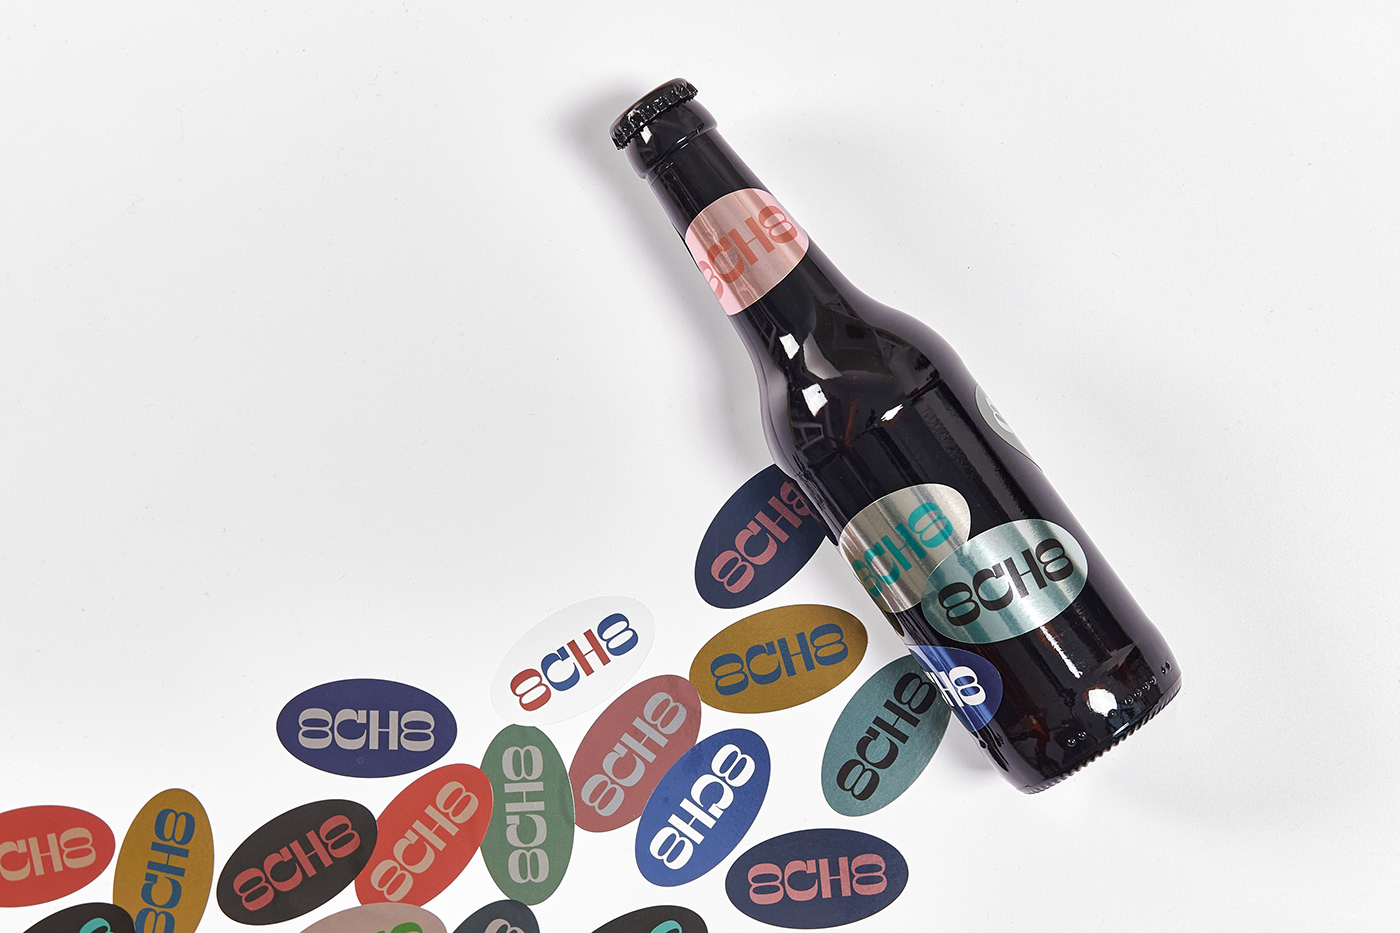 beer bottle cerveza design Label lettering logo Packaging